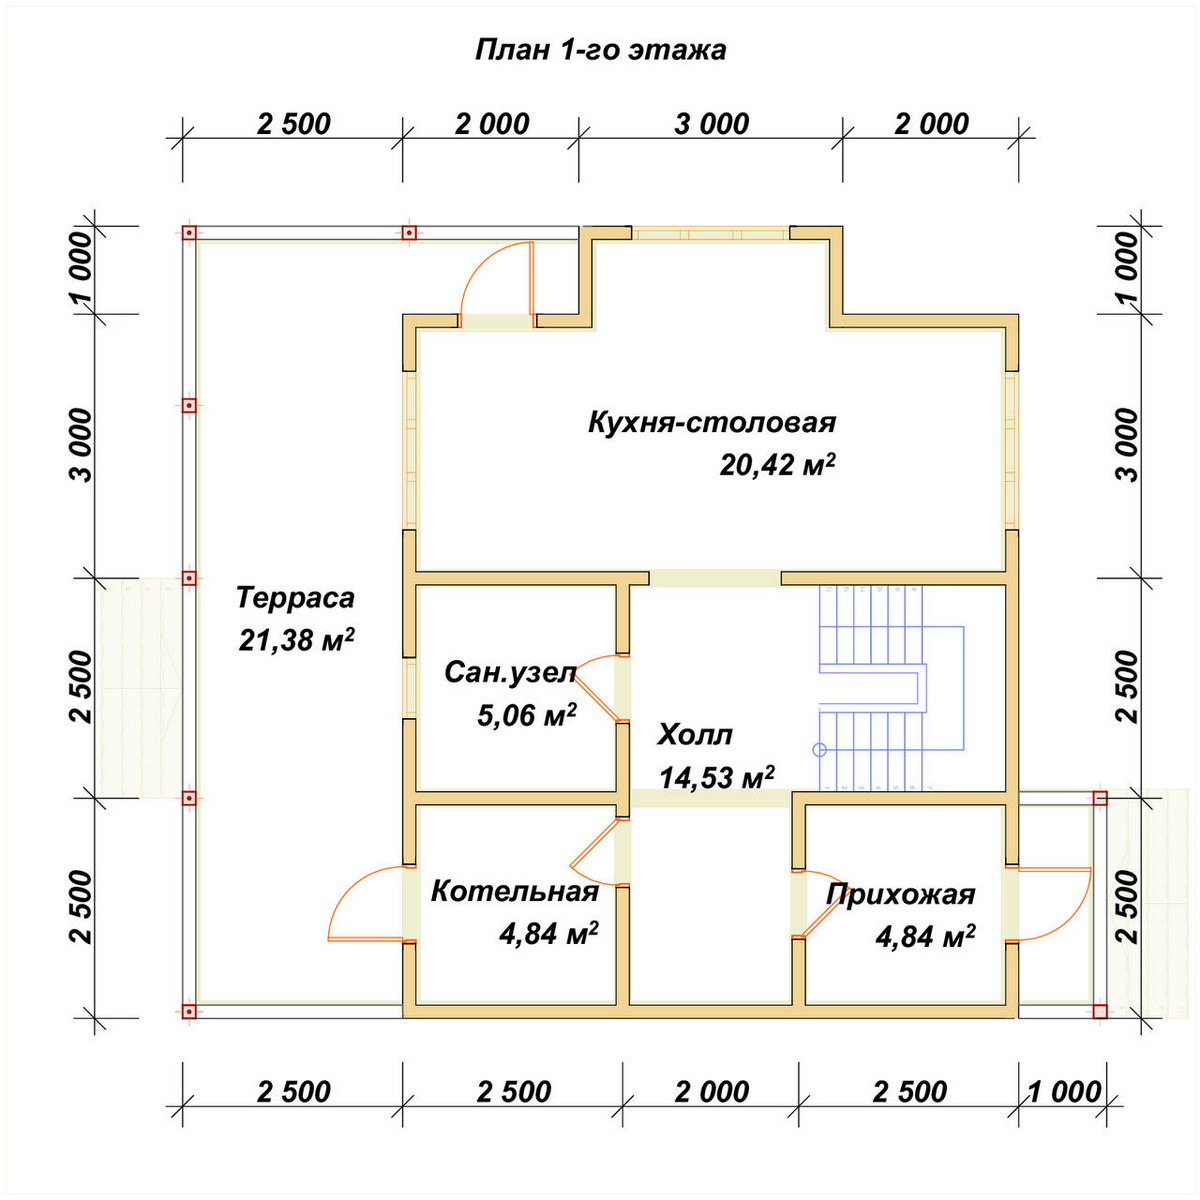 Планировка 1-го этаж дома ДБ-256